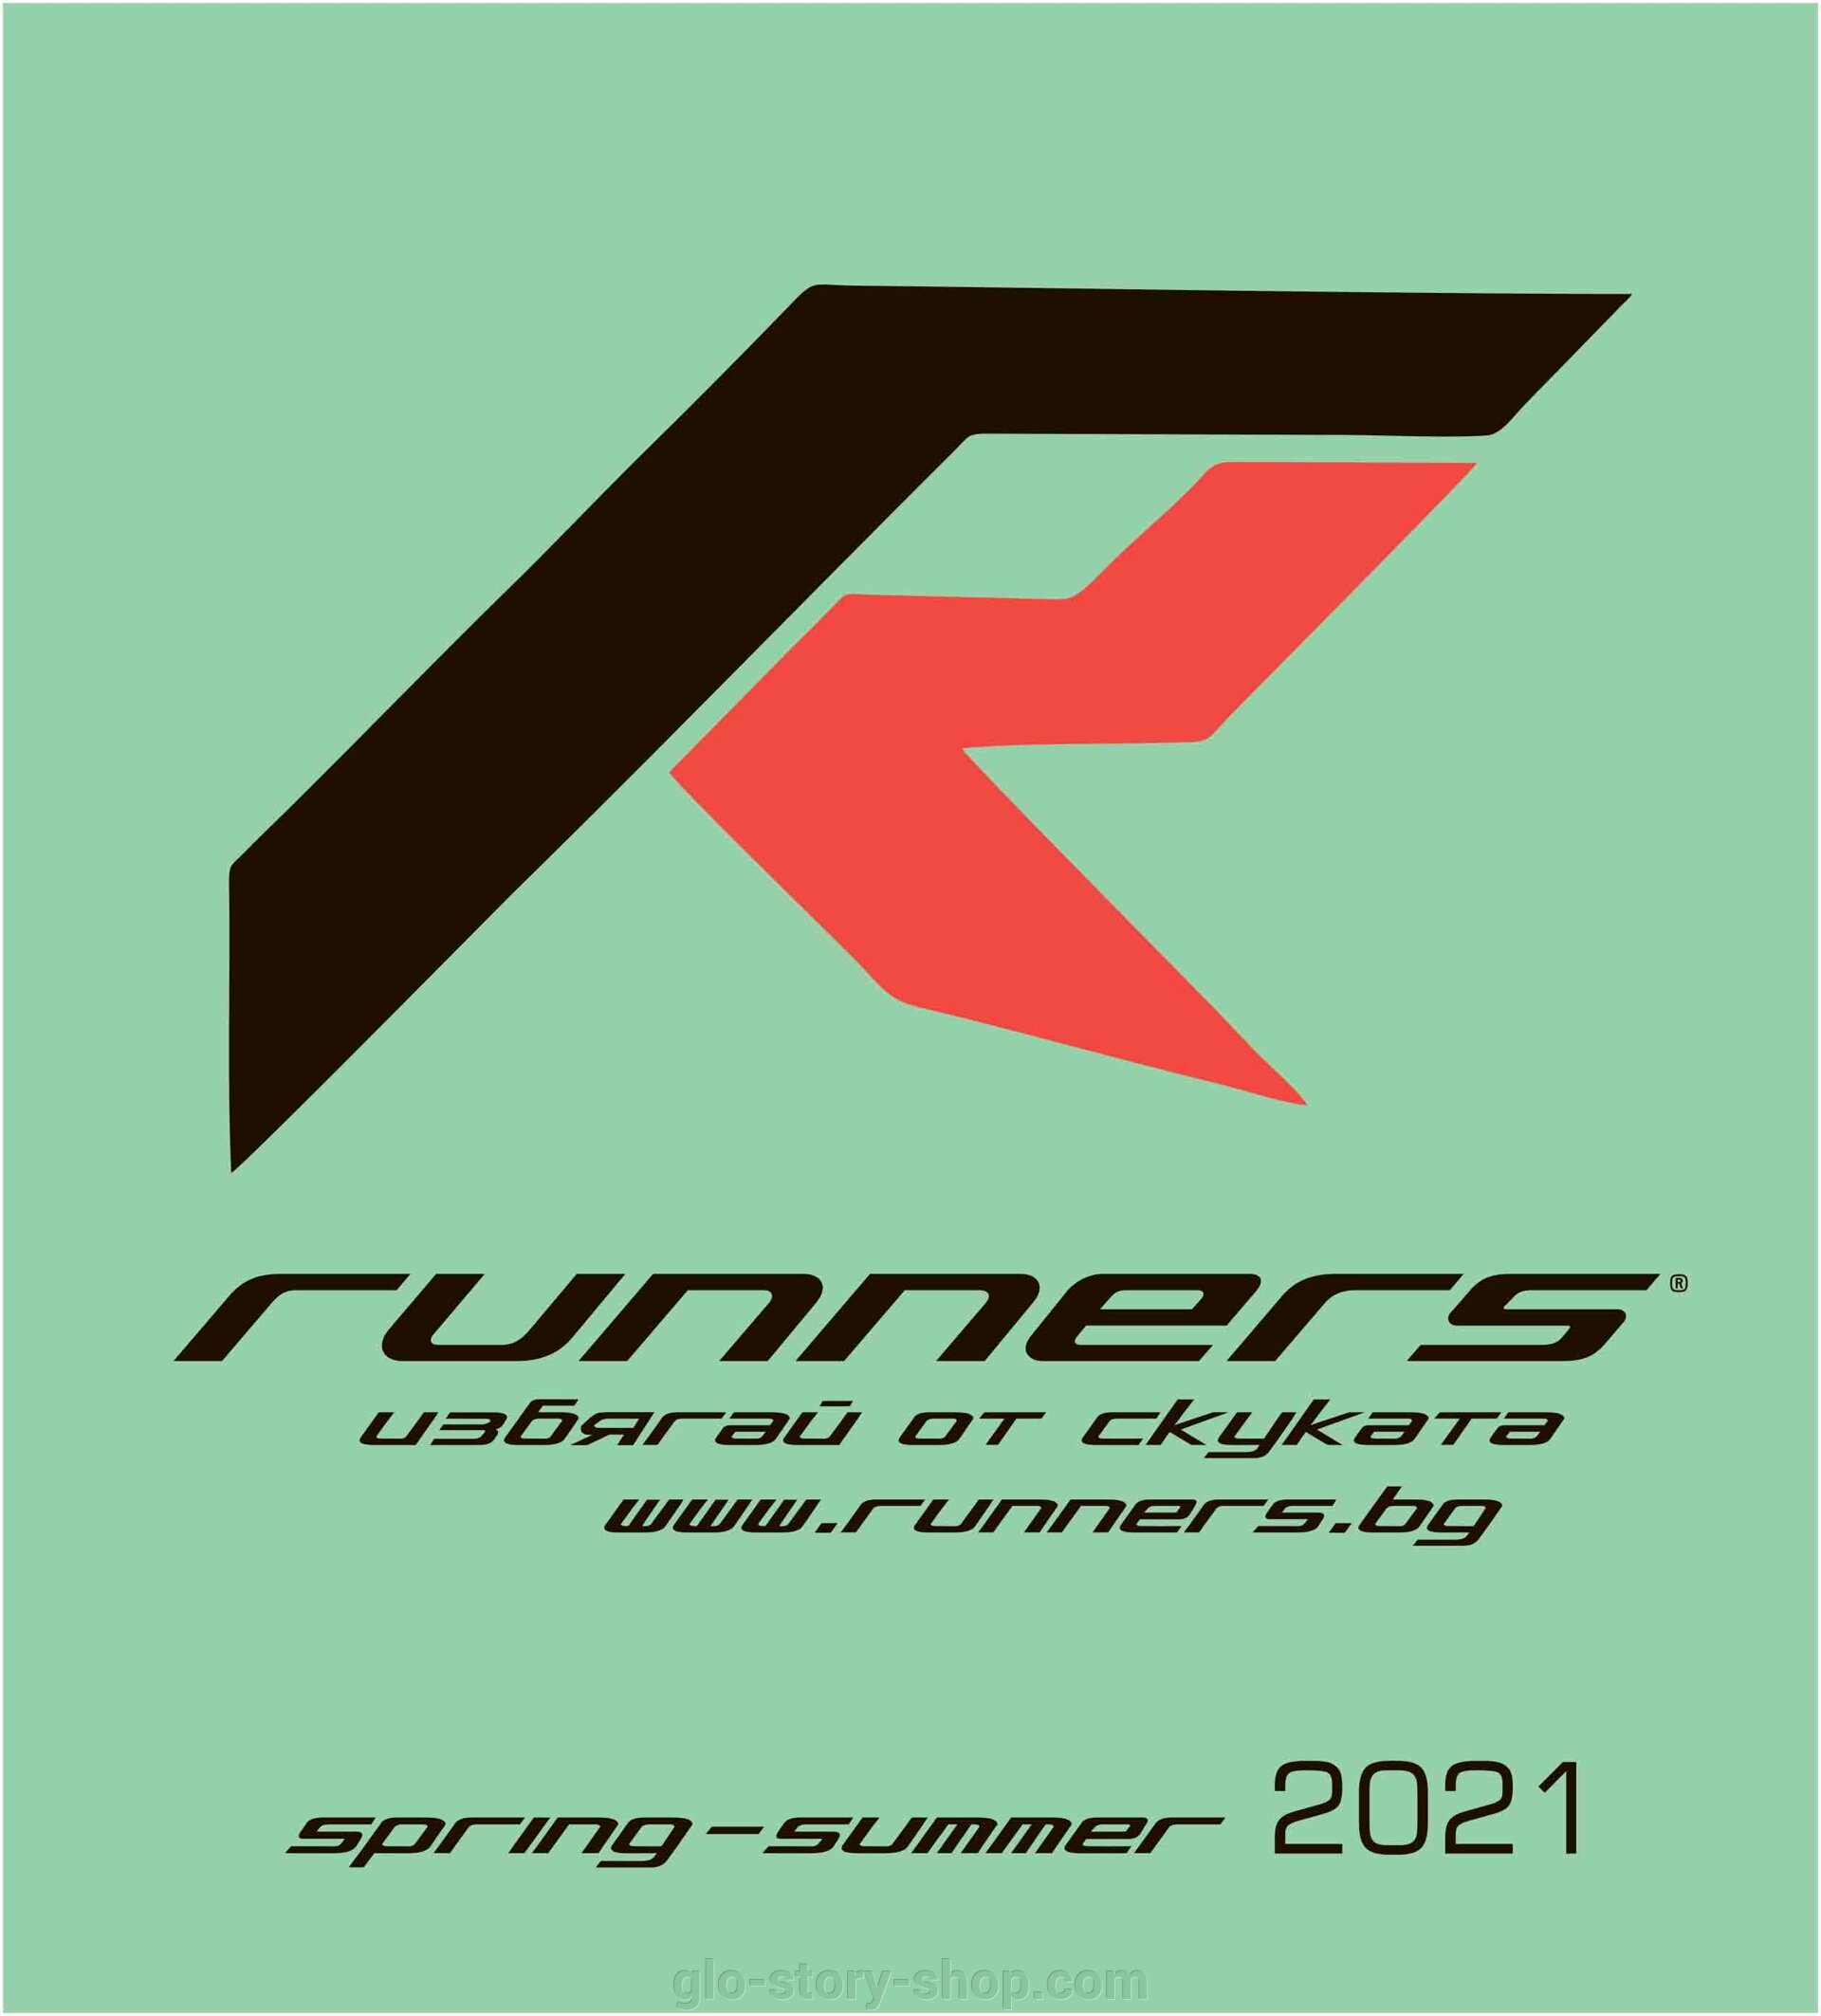 Каталог Runners весна- лето 2021 - фото pic_204fe3cdf5cbe2a60df9411173b84286_1920x9000_1.jpg